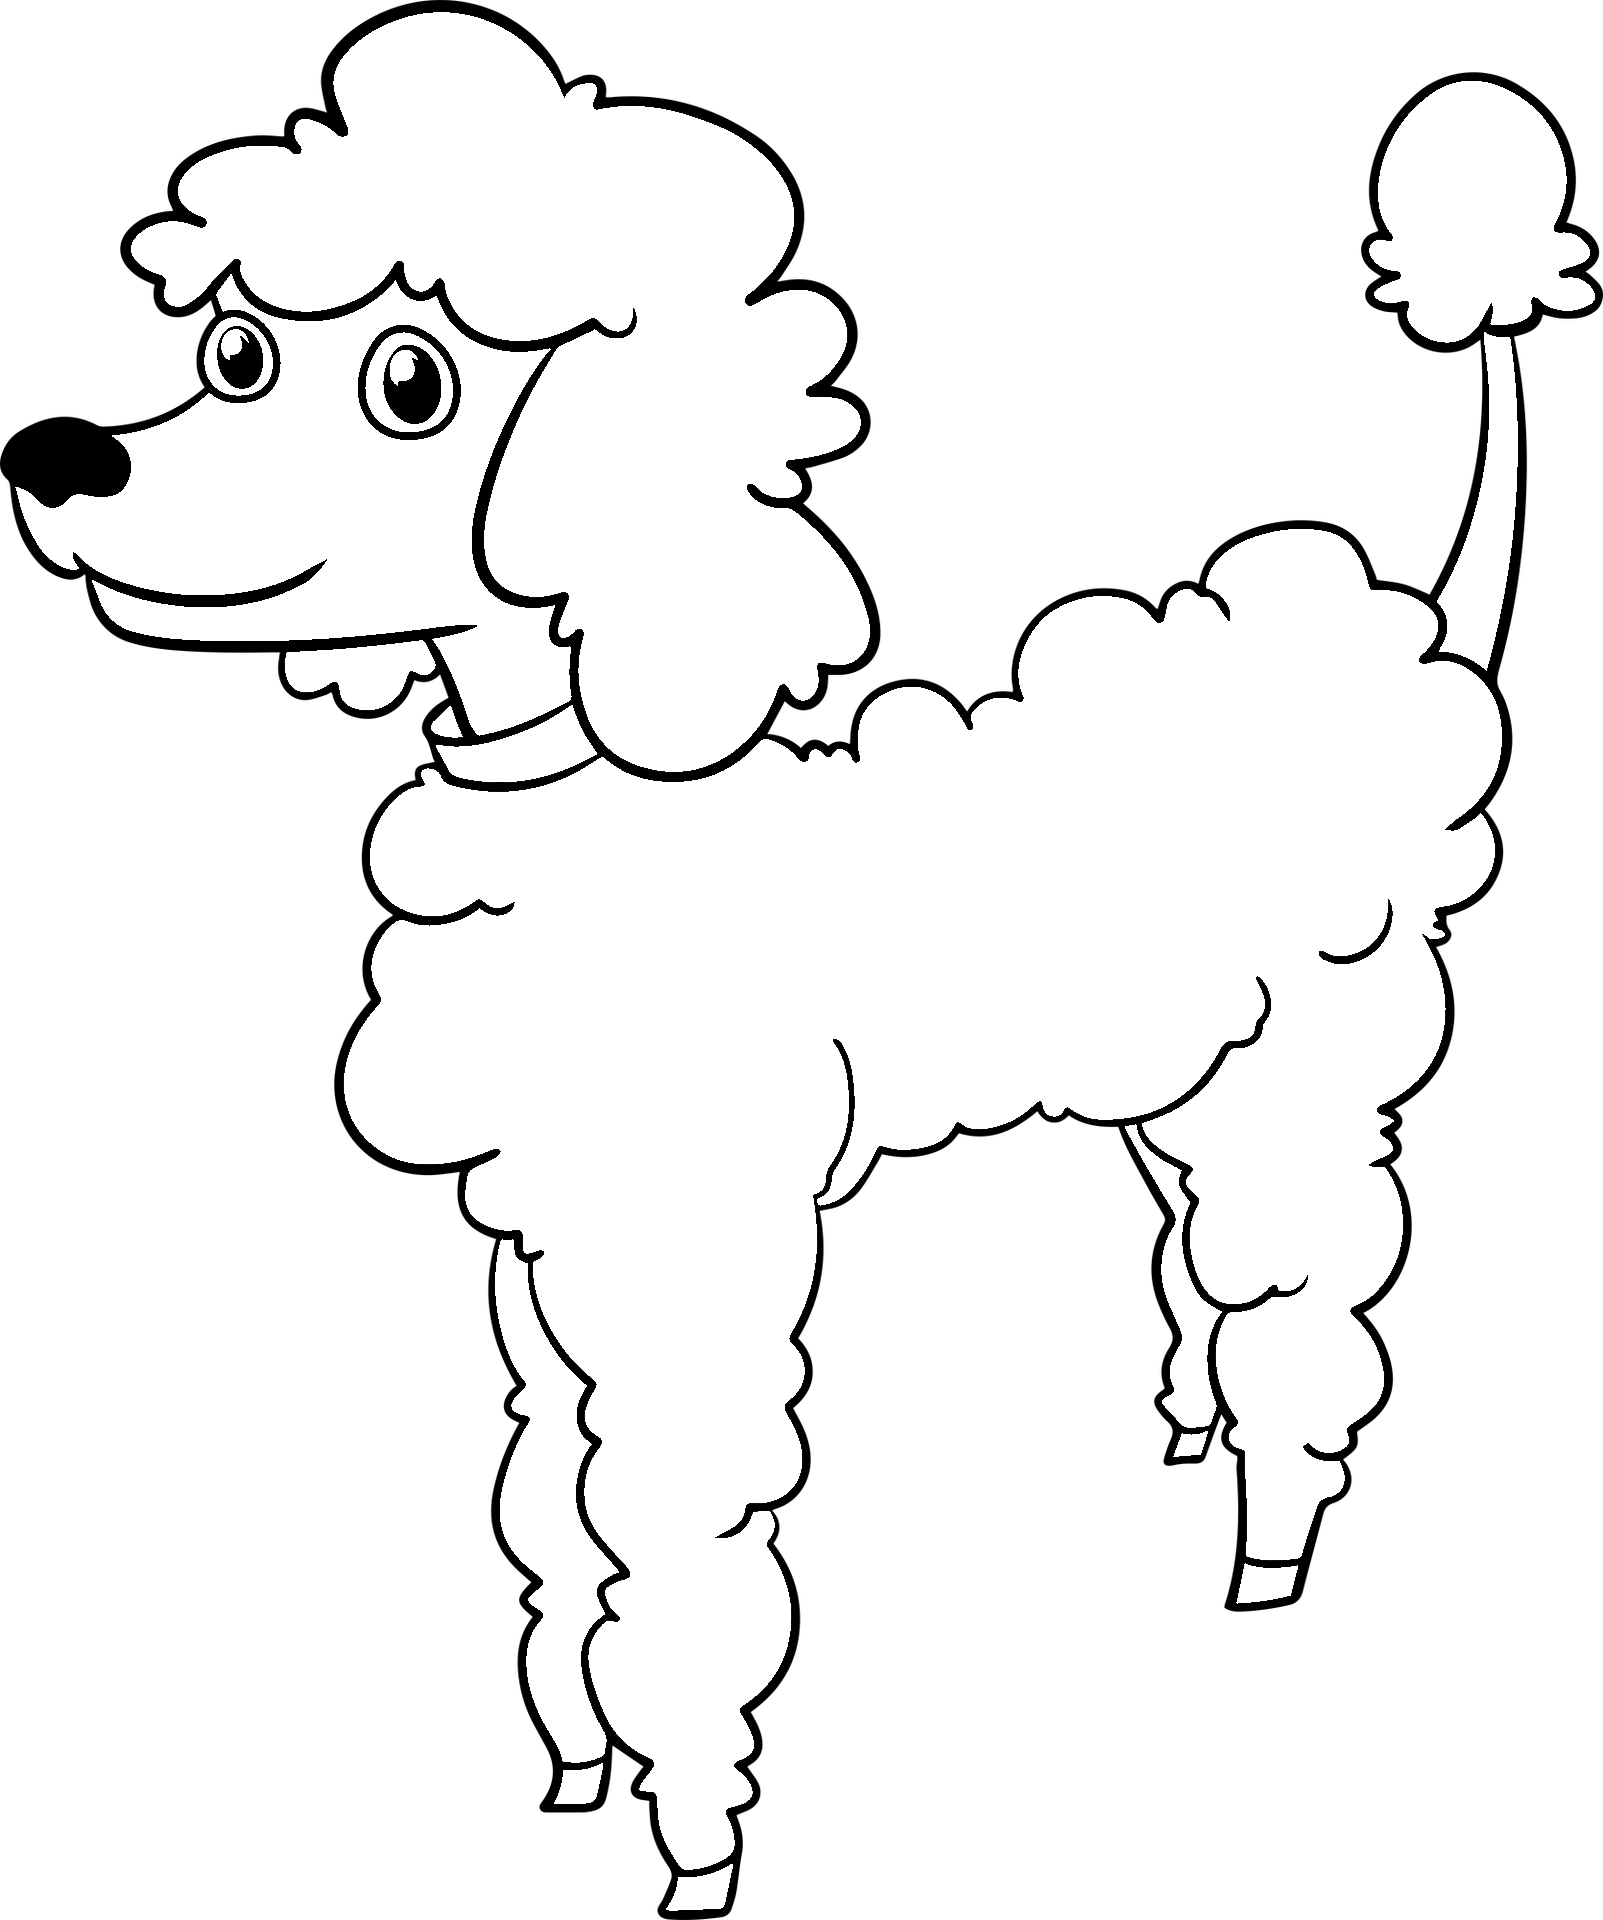 Disegno da colorare di cane barboncino stile cartone animato